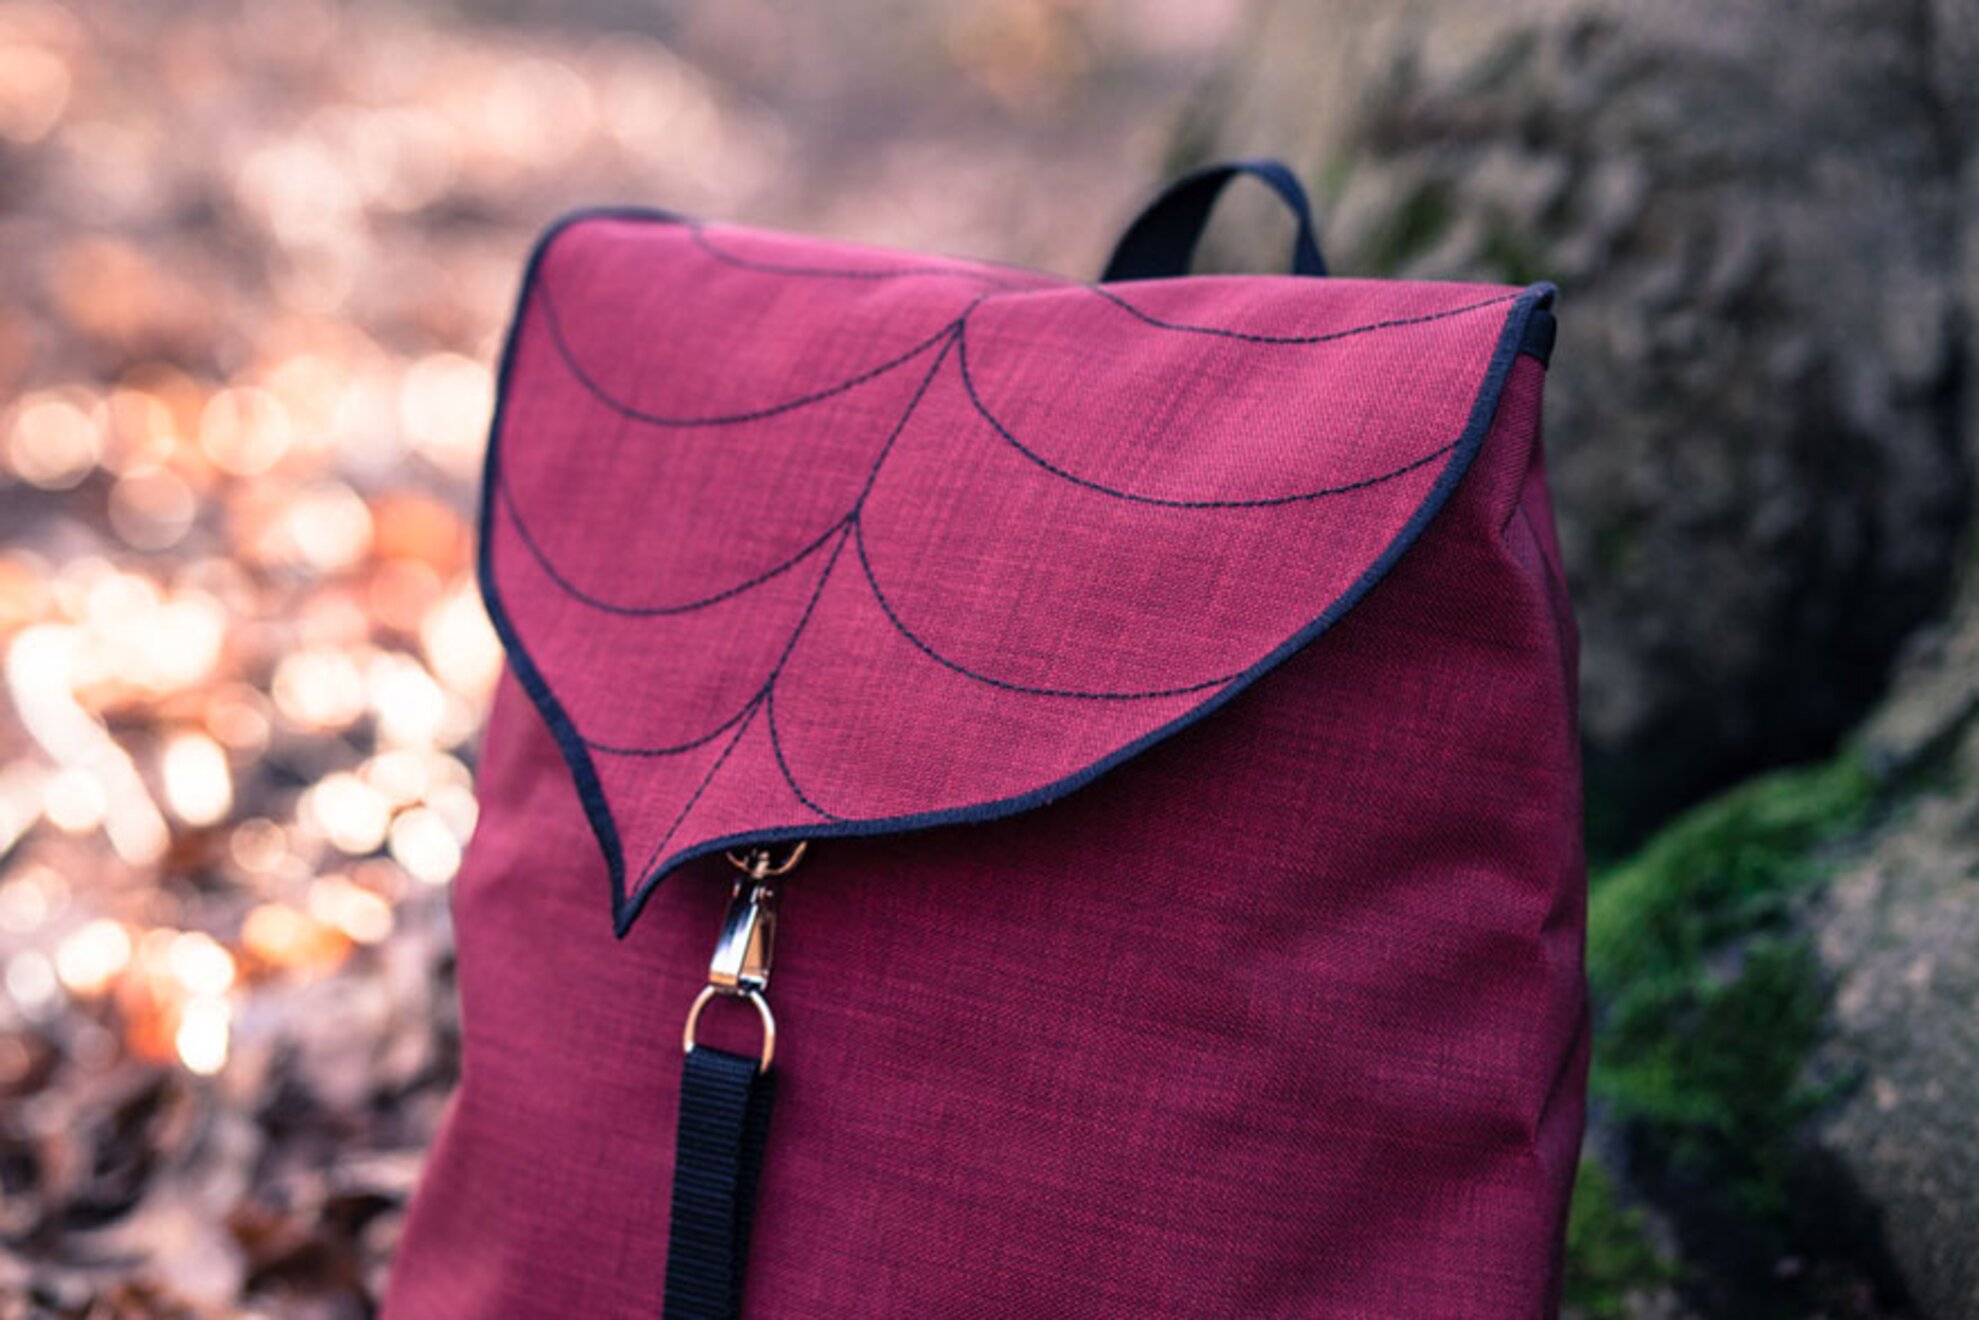 Budapest-based designers flourish with Leafling bags